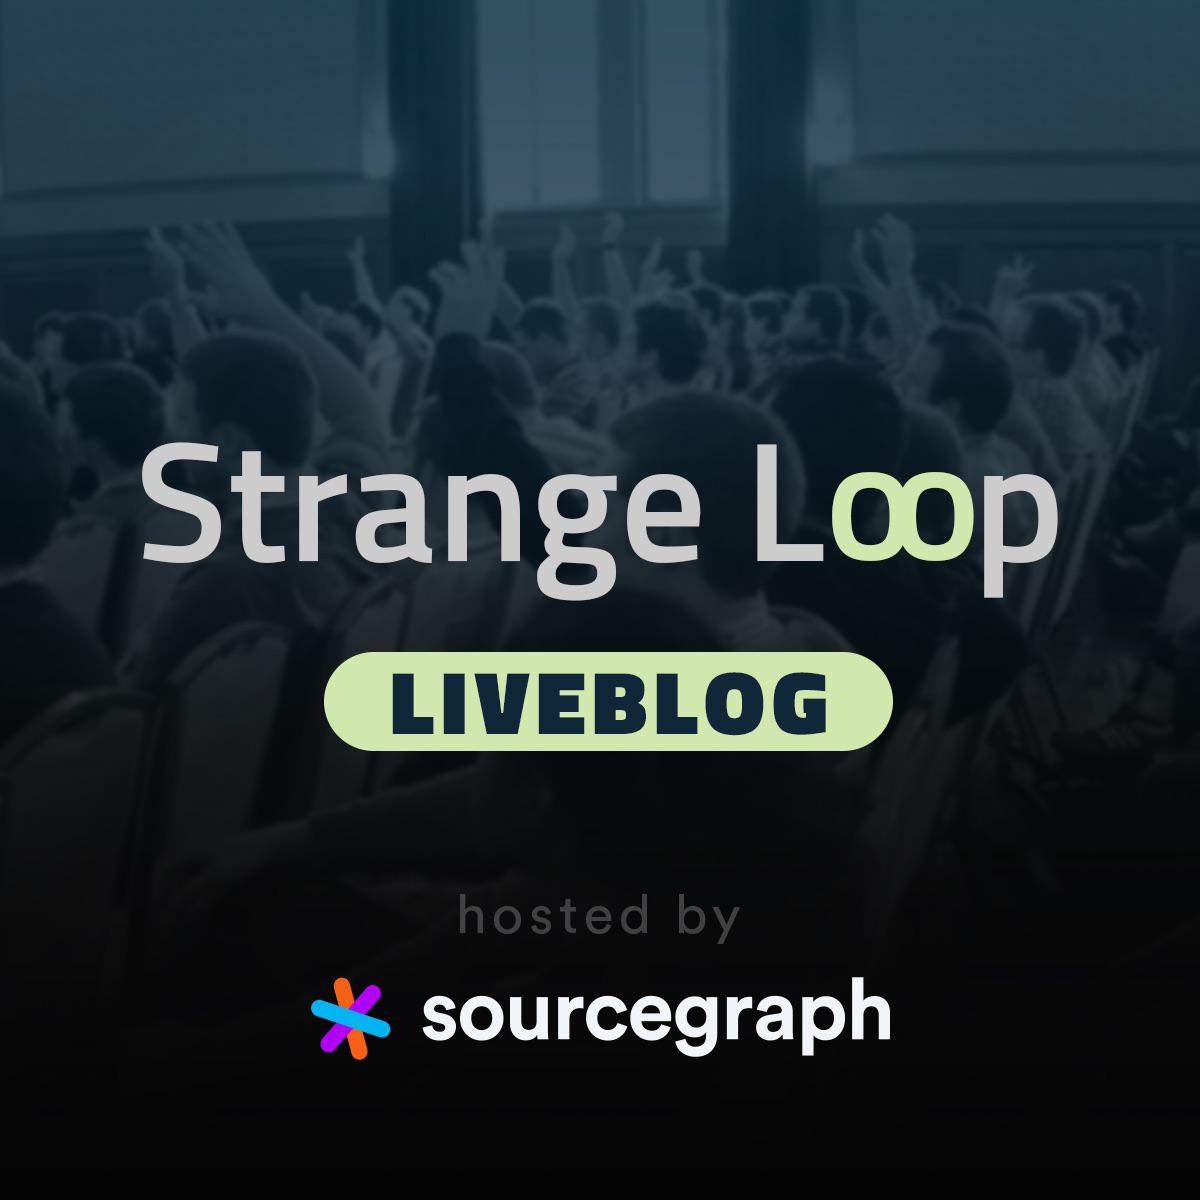 Sourcegraph liveblogging the 2019 Strange Loop conference